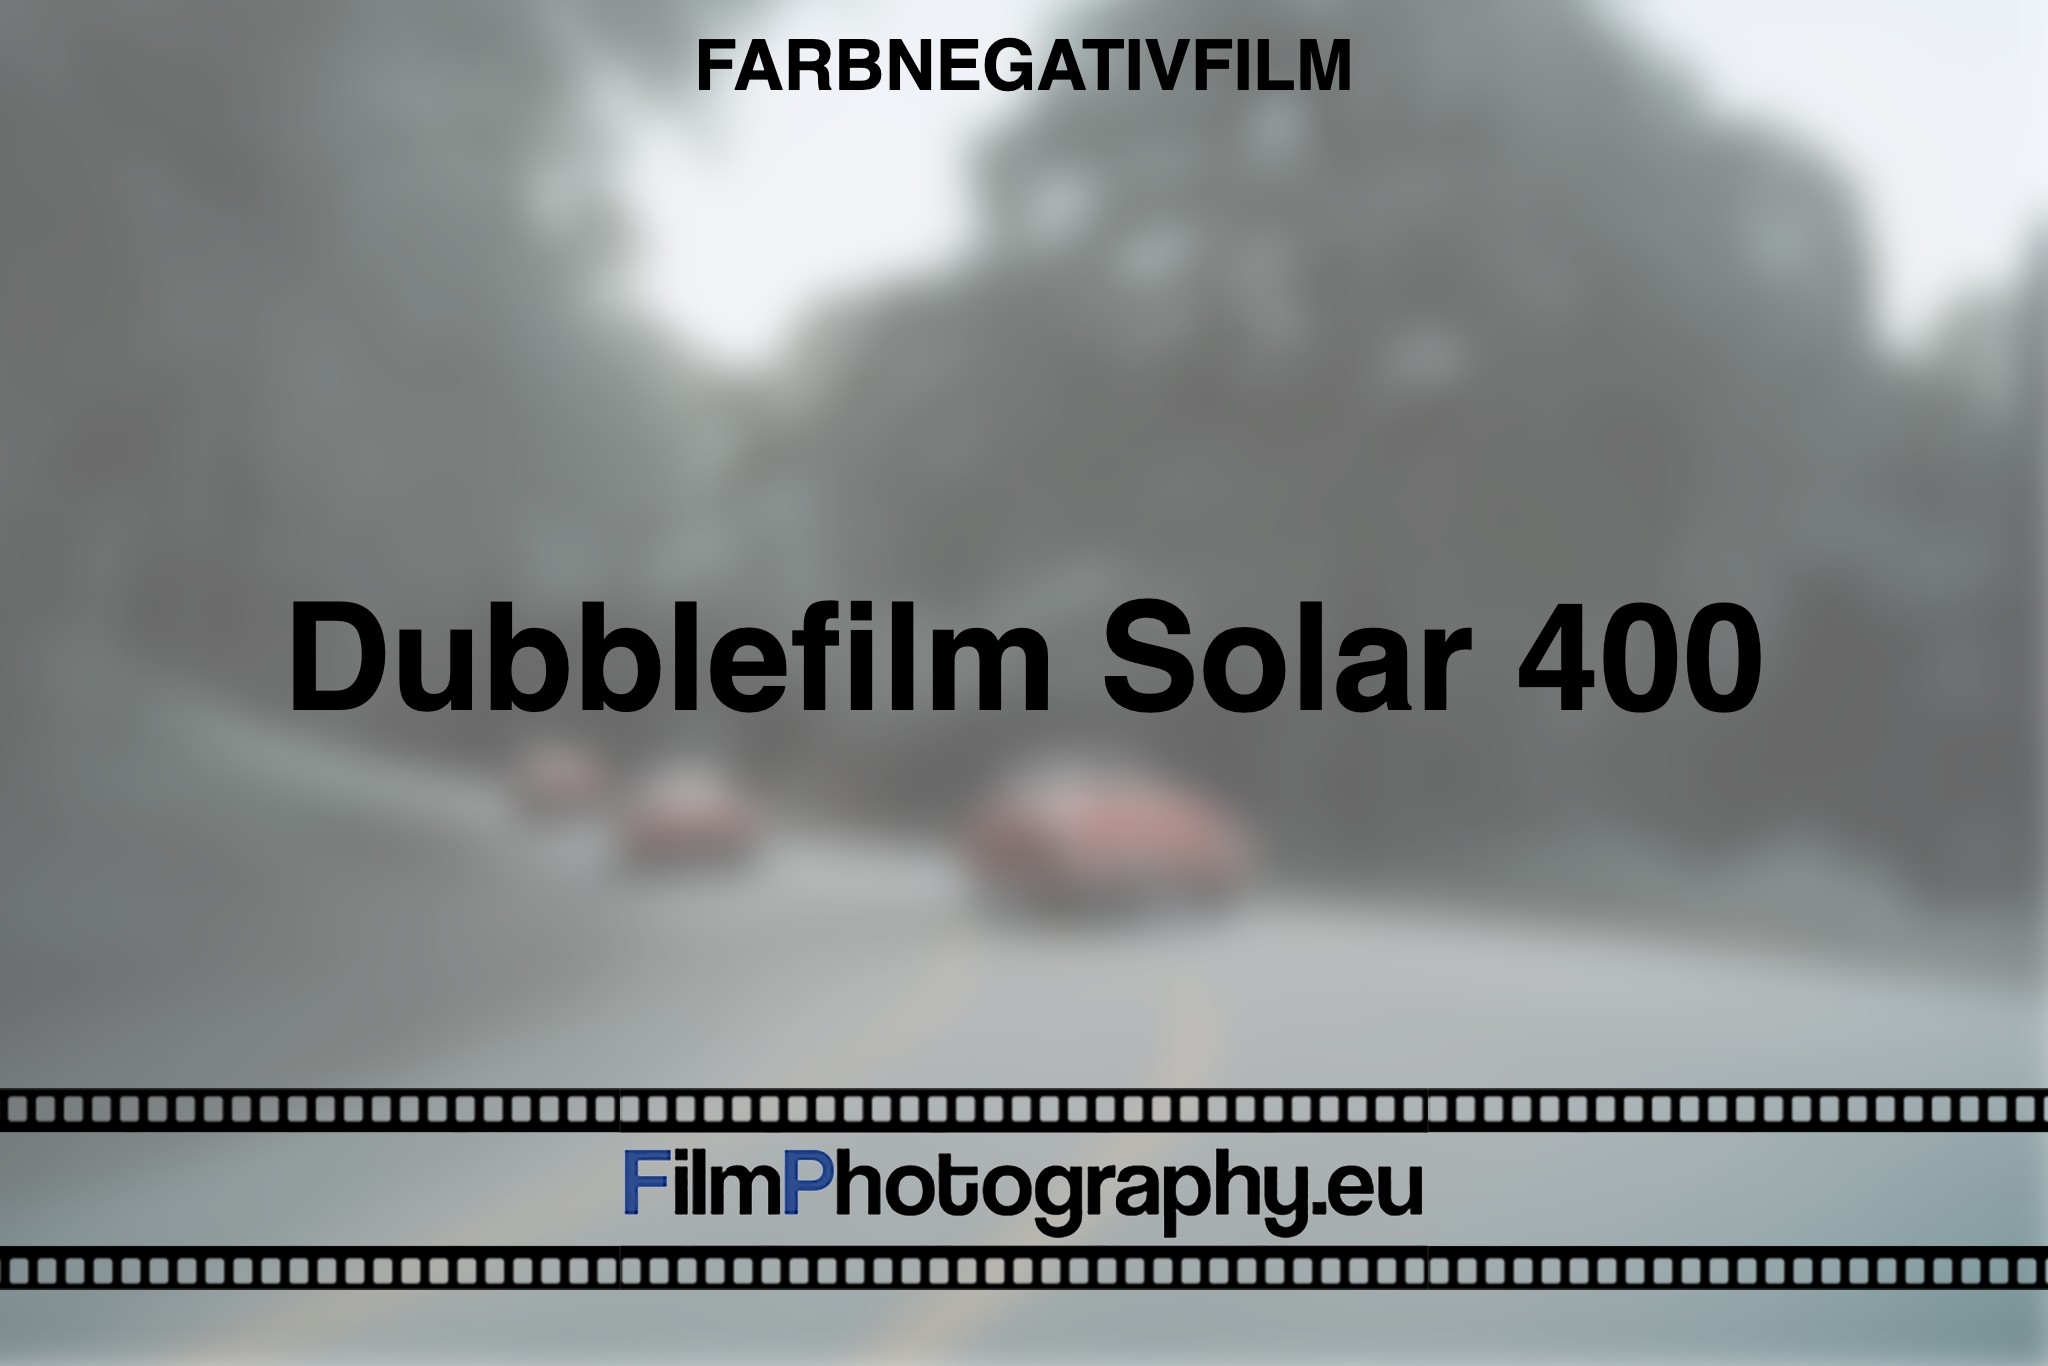 dubblefilm-solar-400-farbnegativfilm-bnv